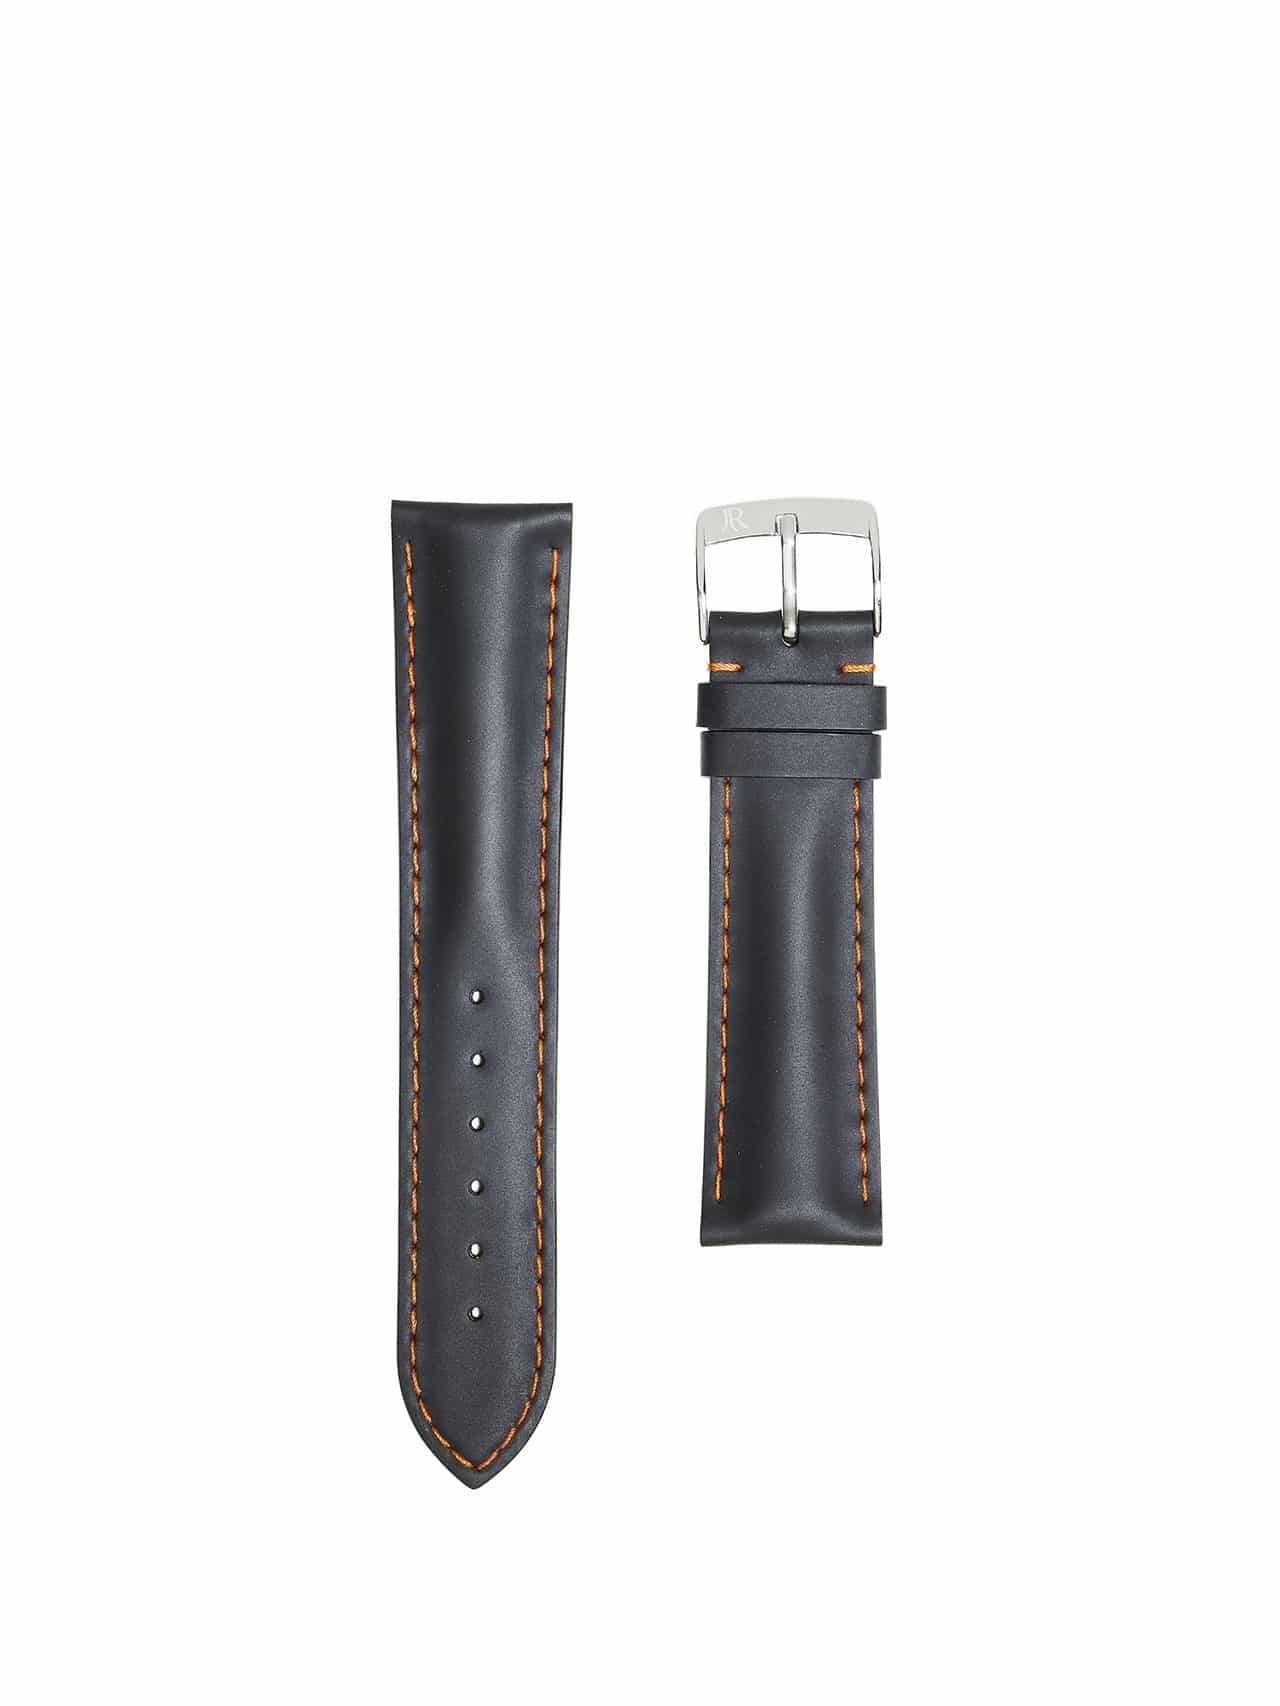 jean rousseau watch straps rubber grey black